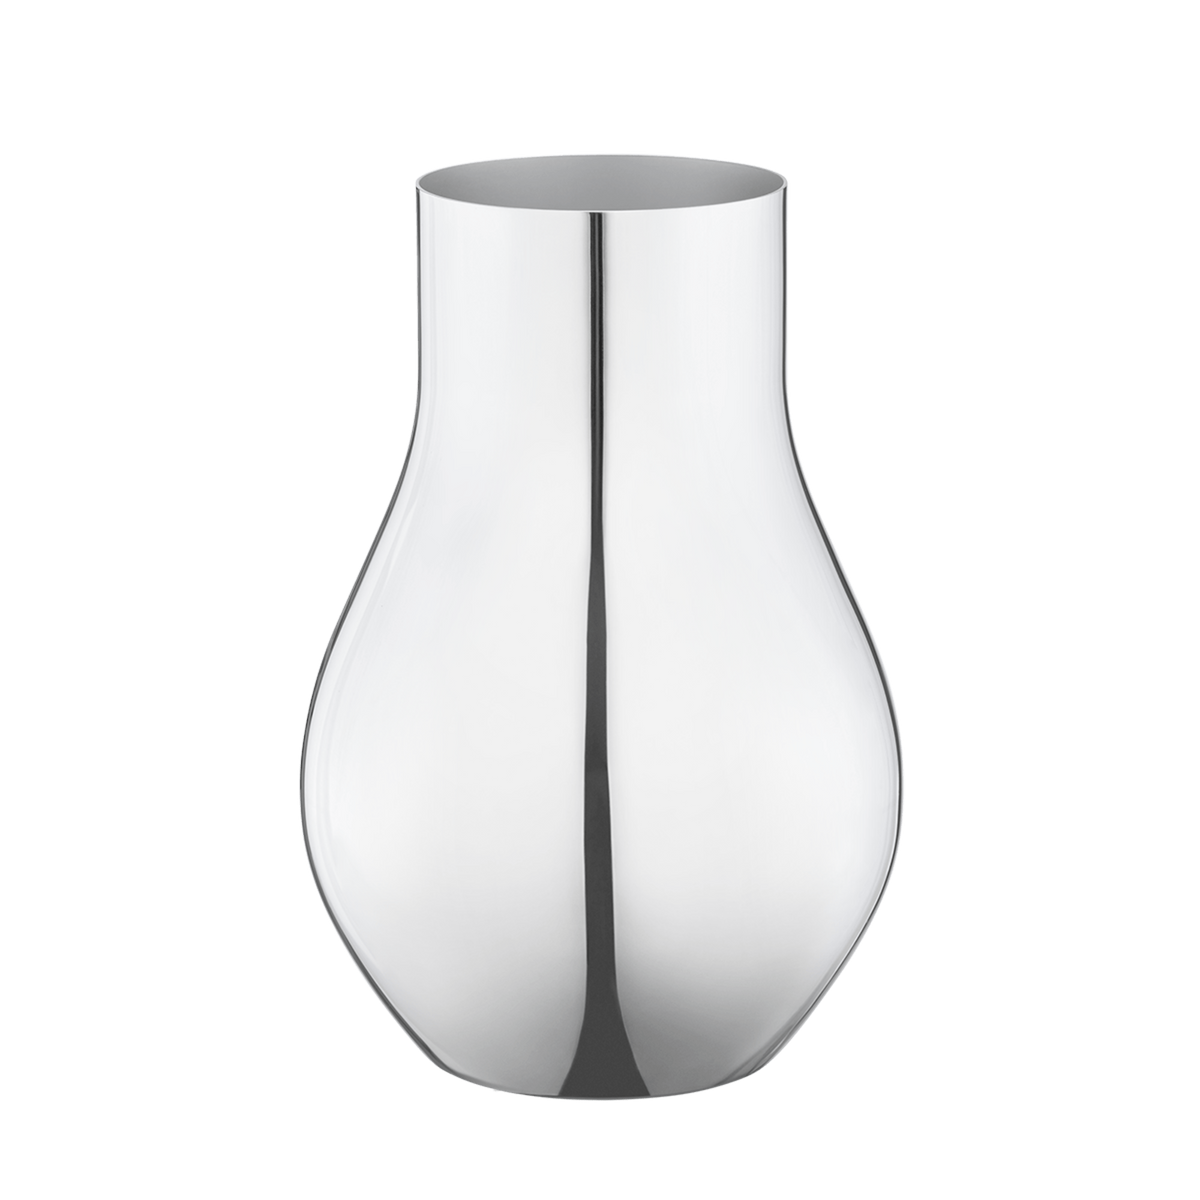 Cafu Vase by Georg Jensen